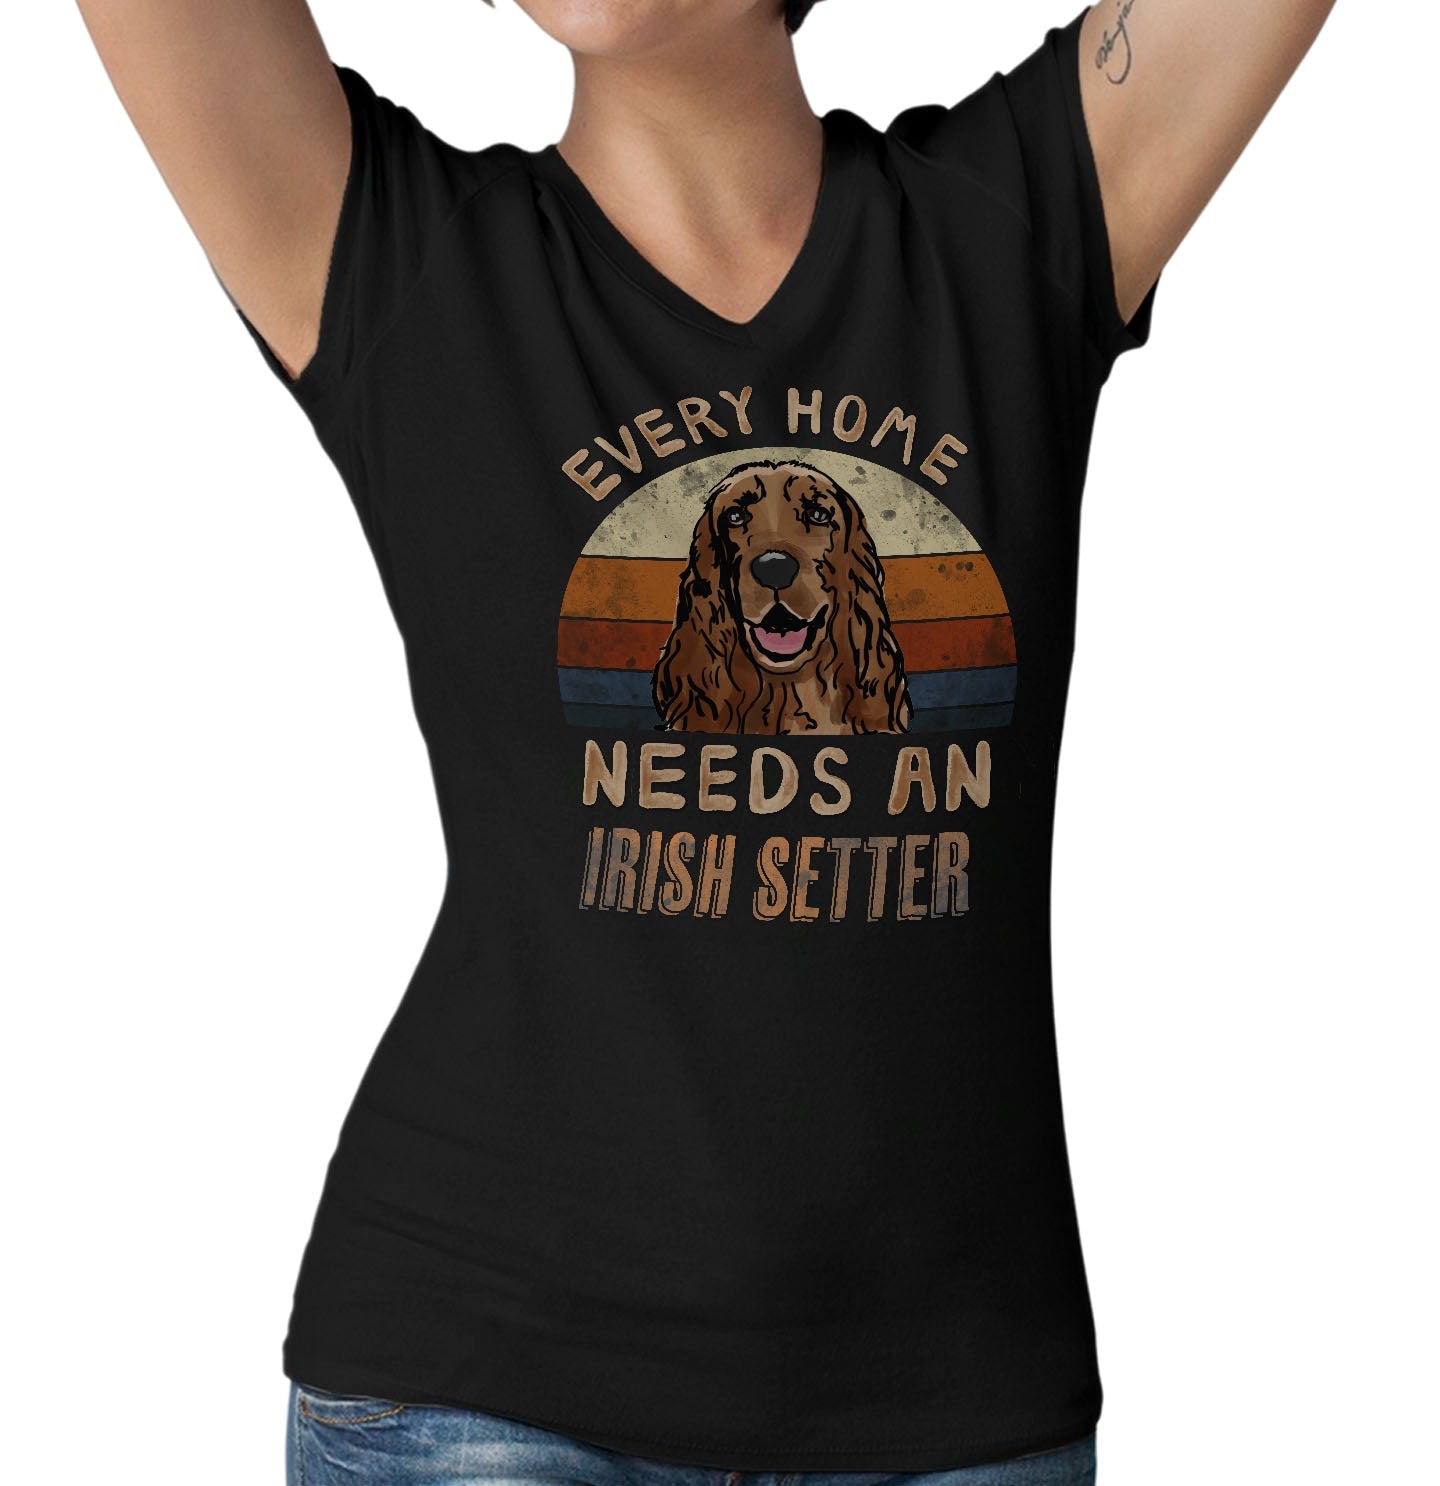 Every Home Needs a Irish Setter - Women's V-Neck T-Shirt